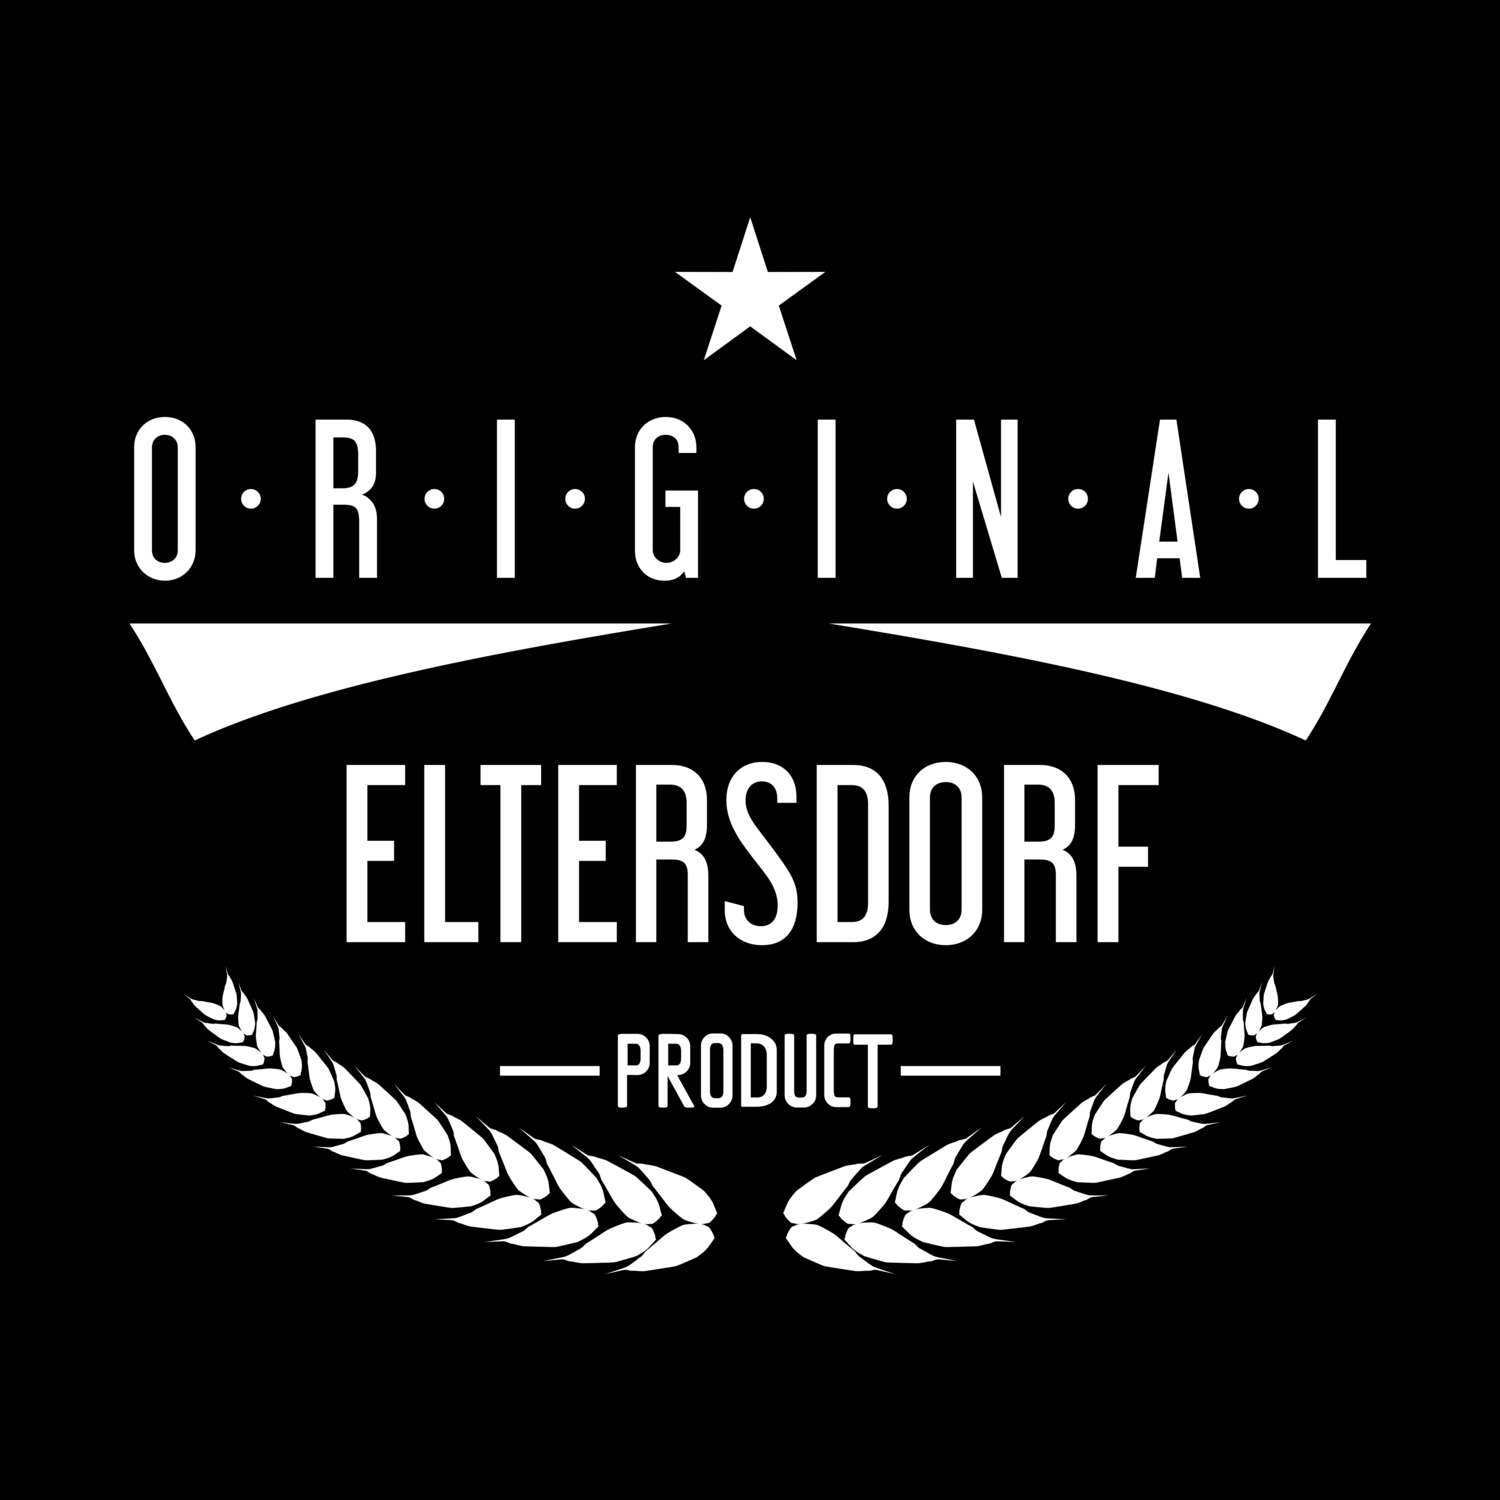 Eltersdorf T-Shirt »Original Product«